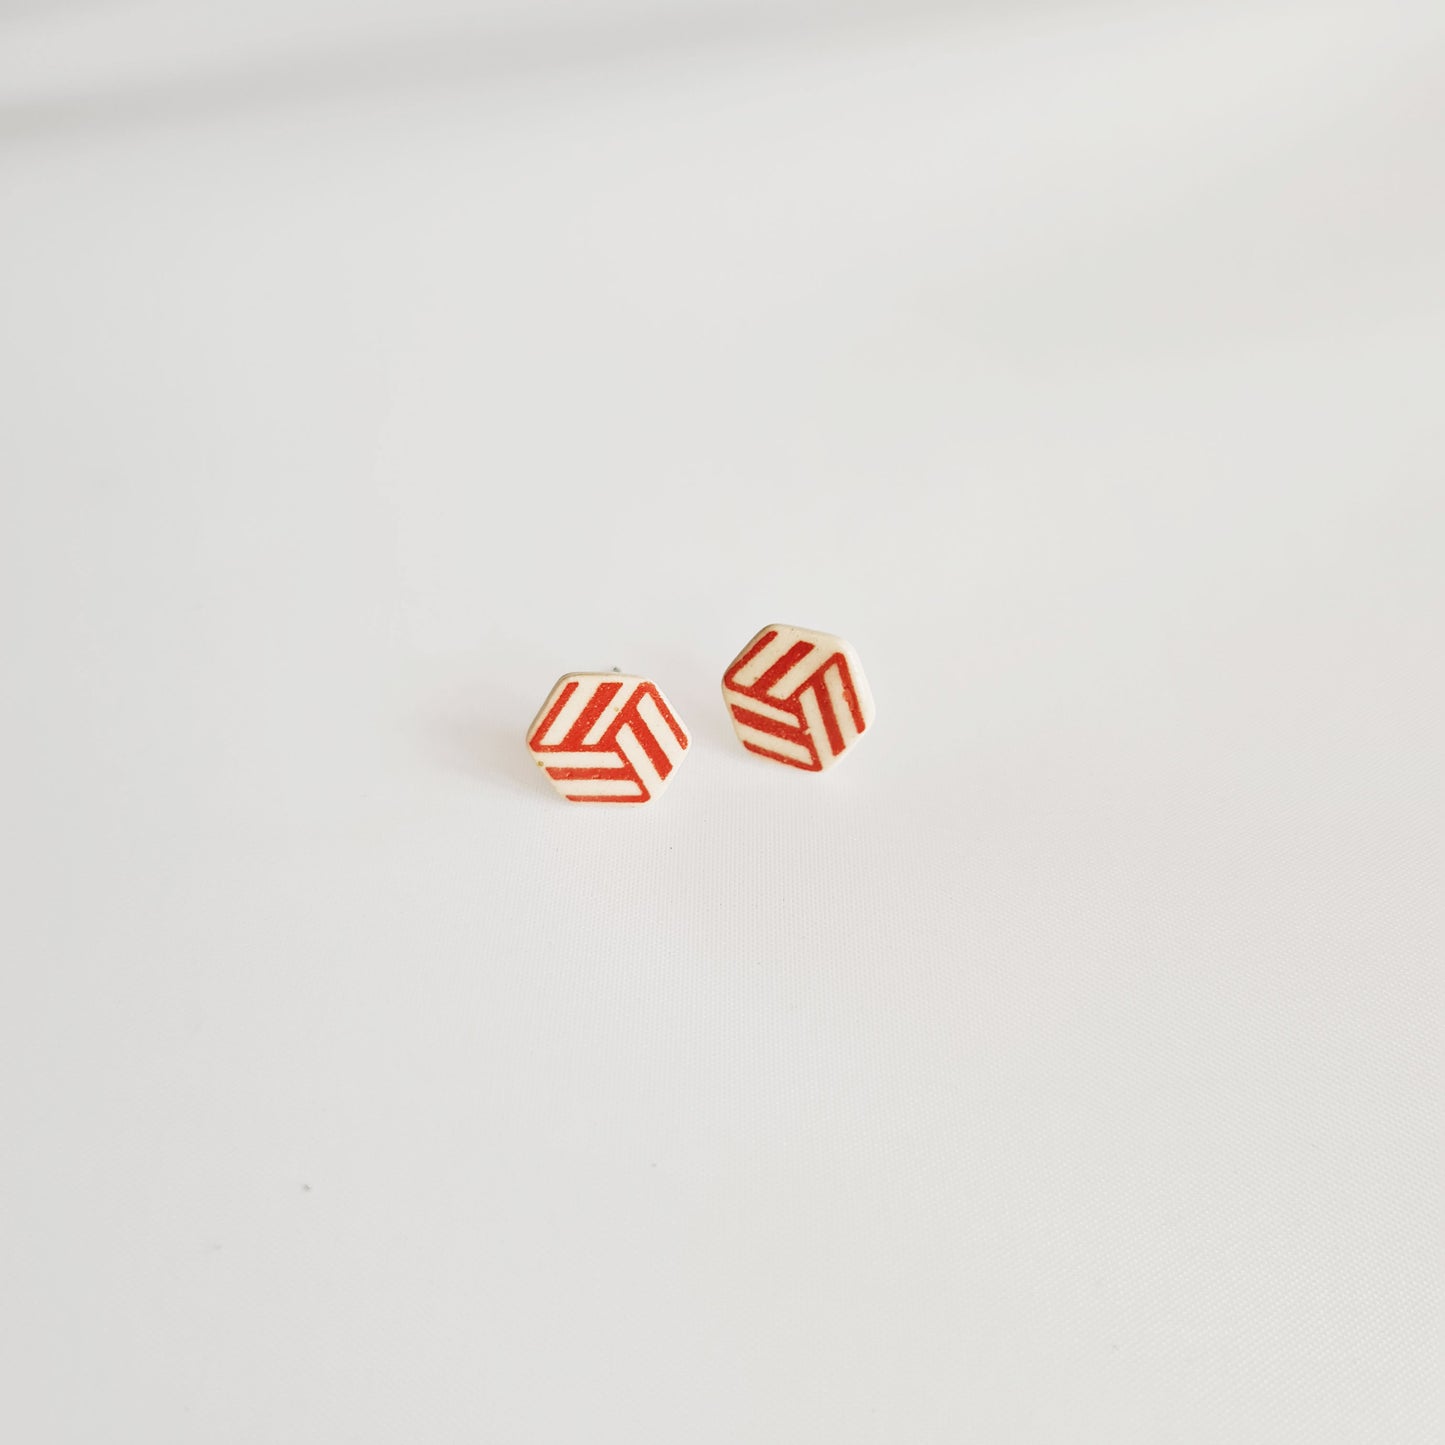 Hexagon shape ceramic stud earrings( Pattern type)